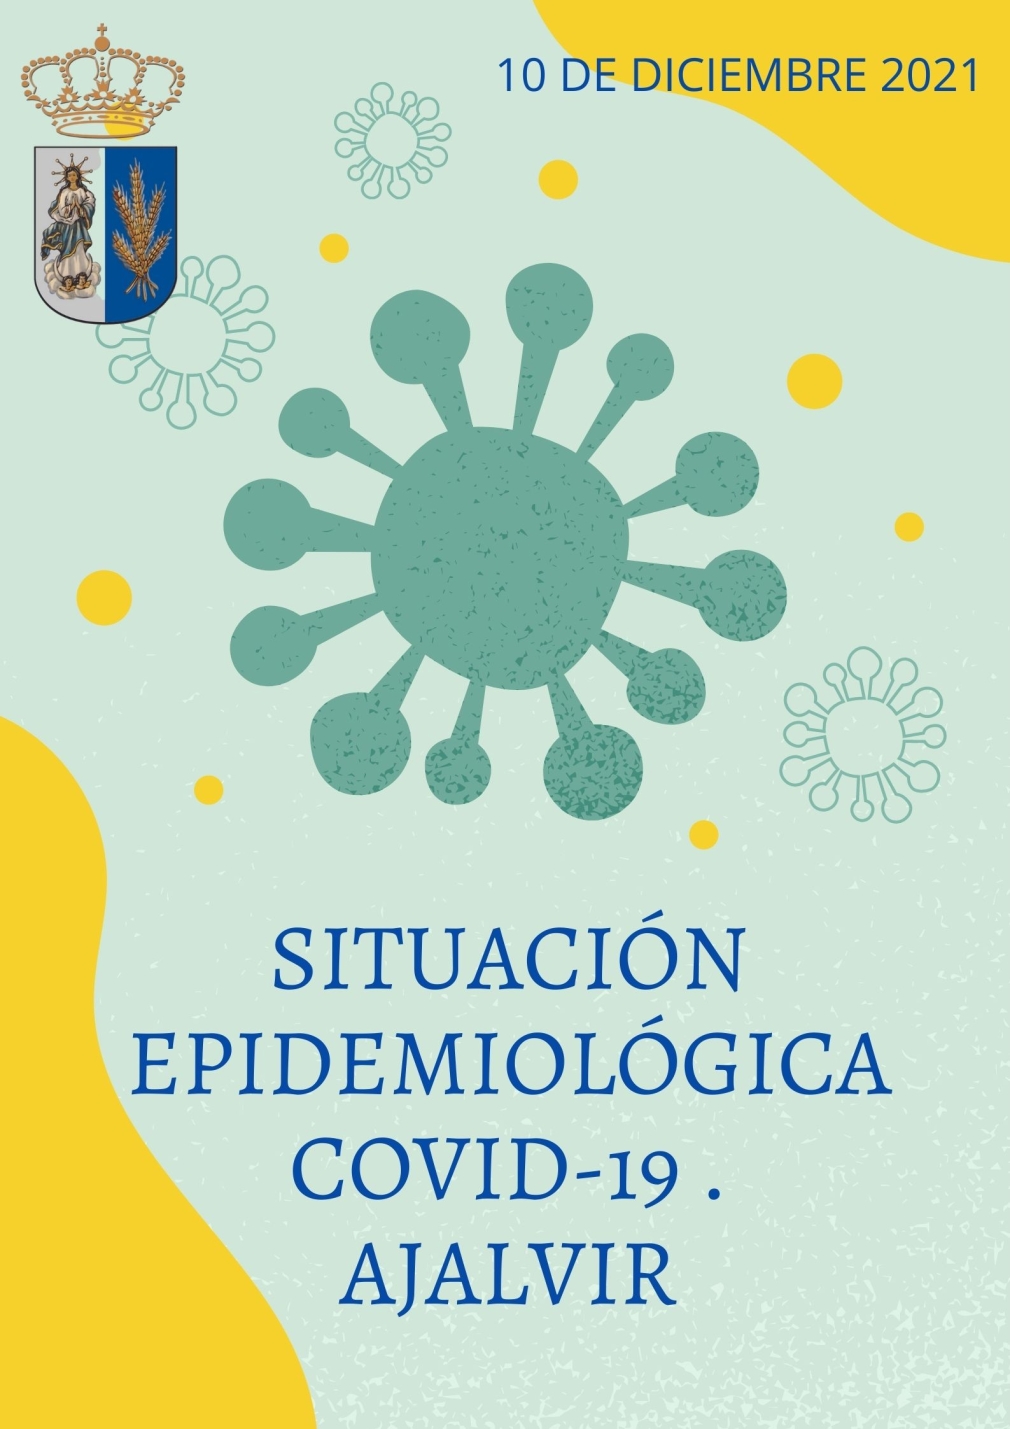 INFORME DE SITUACIÓN EPIDEMIOLÓGICA COVID19 EN AJALVIR A 10 DE DICIEMBRE